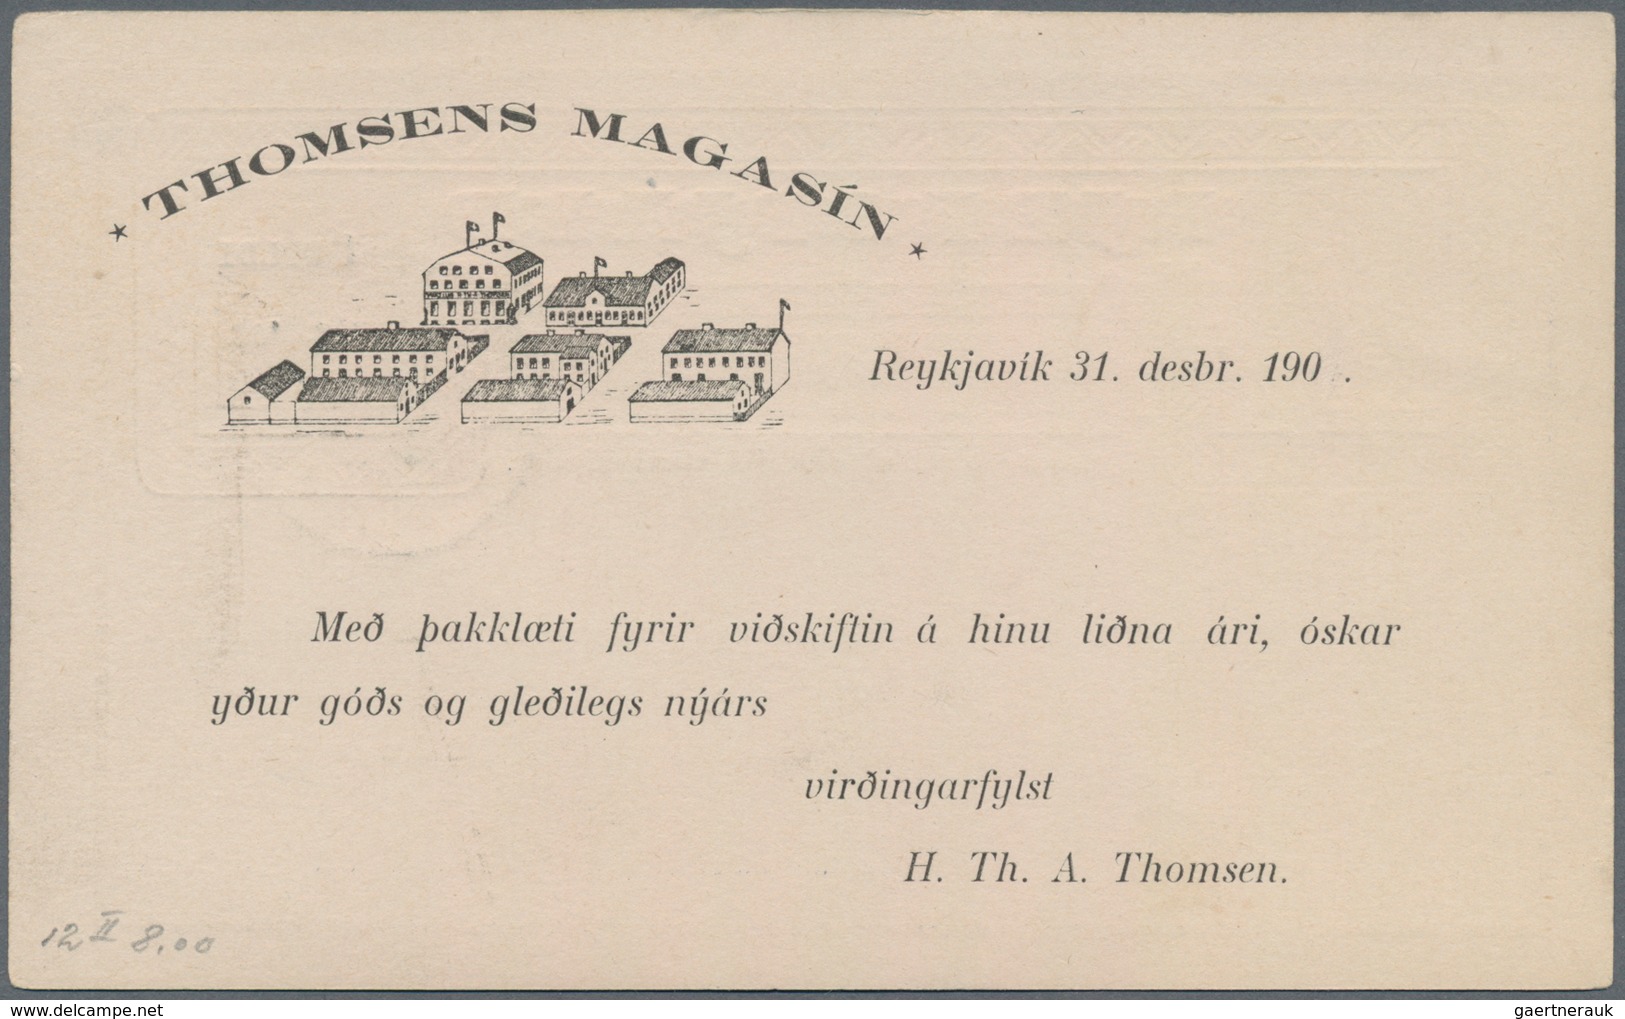 Island - Ganzsachen: 1903, 1 Gildi On 5 Aur Blue Postal Stationery Postcard With Additional Print On - Postwaardestukken